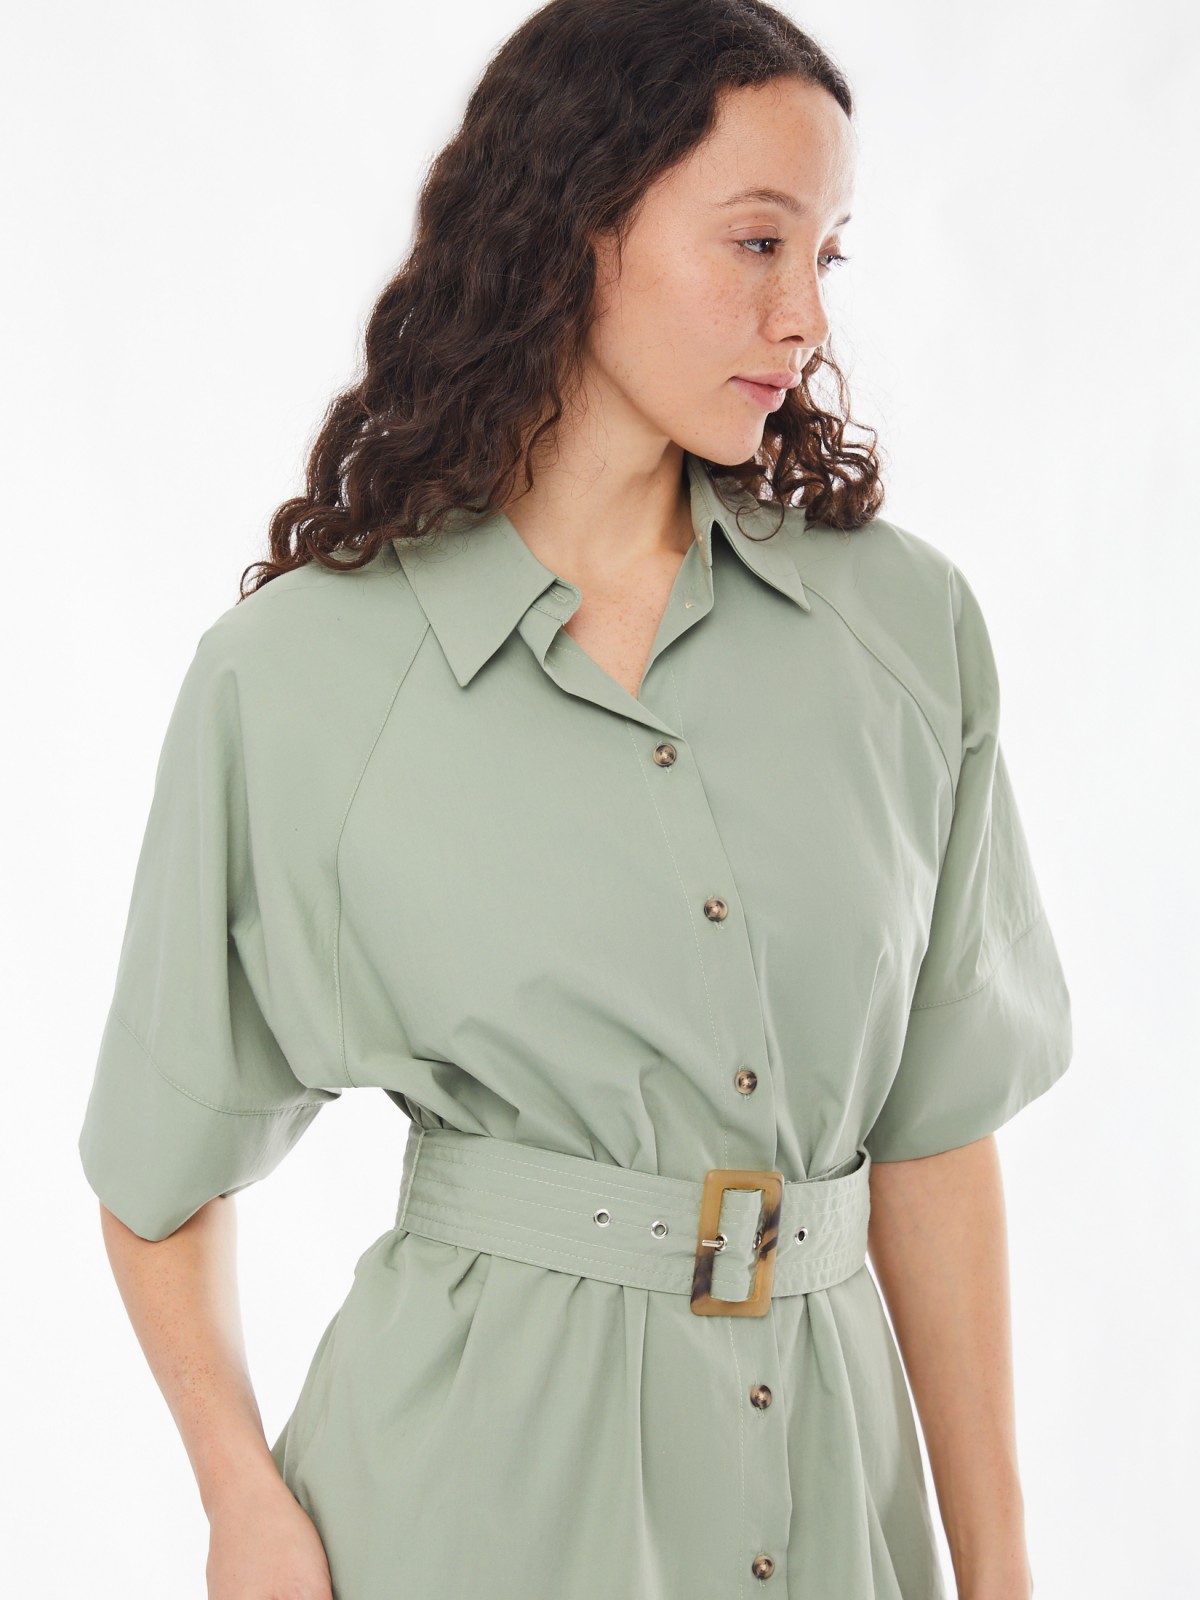 Платье-рубашка с ремнём и рукавами-реглан zolla 02413827Y111, цвет хаки, размер XS/S - фото 5